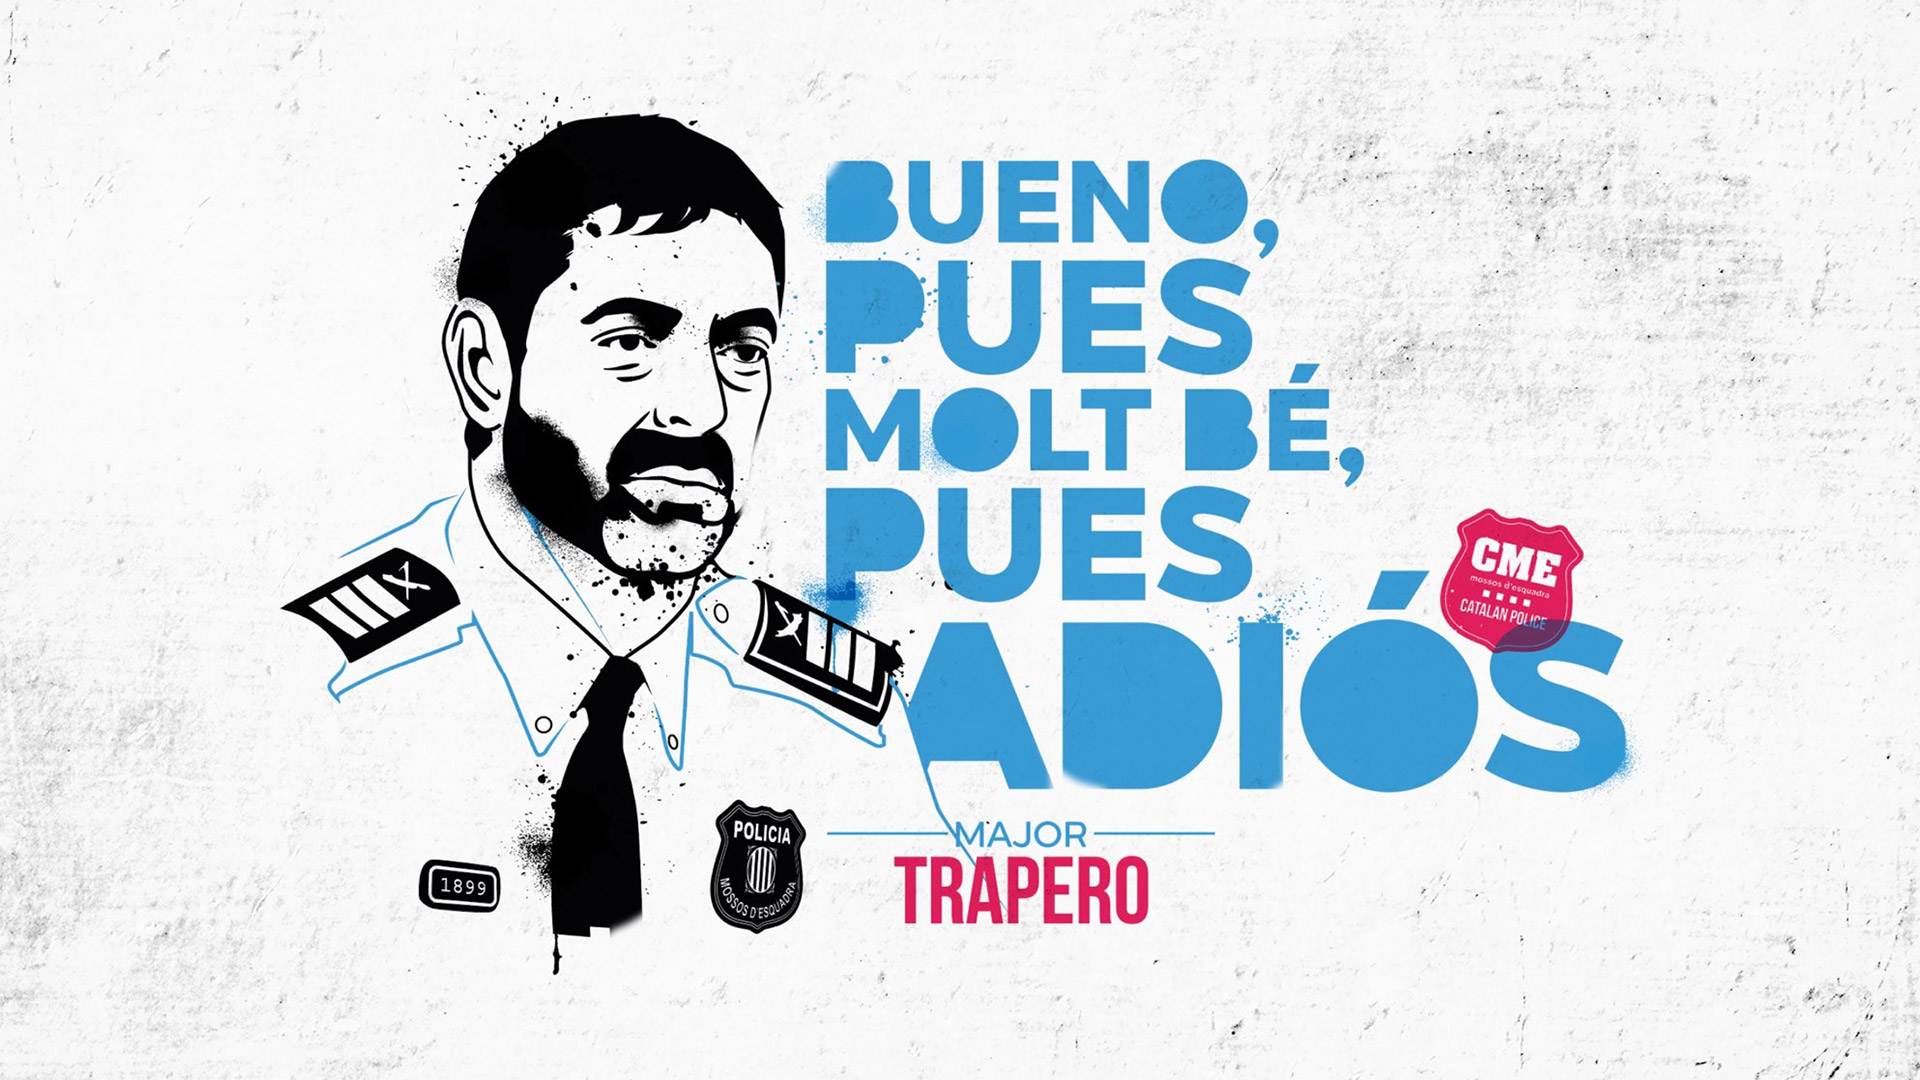 Josep Lluís Trapero y su #BuenoPuesMoltBéPuesAdiós